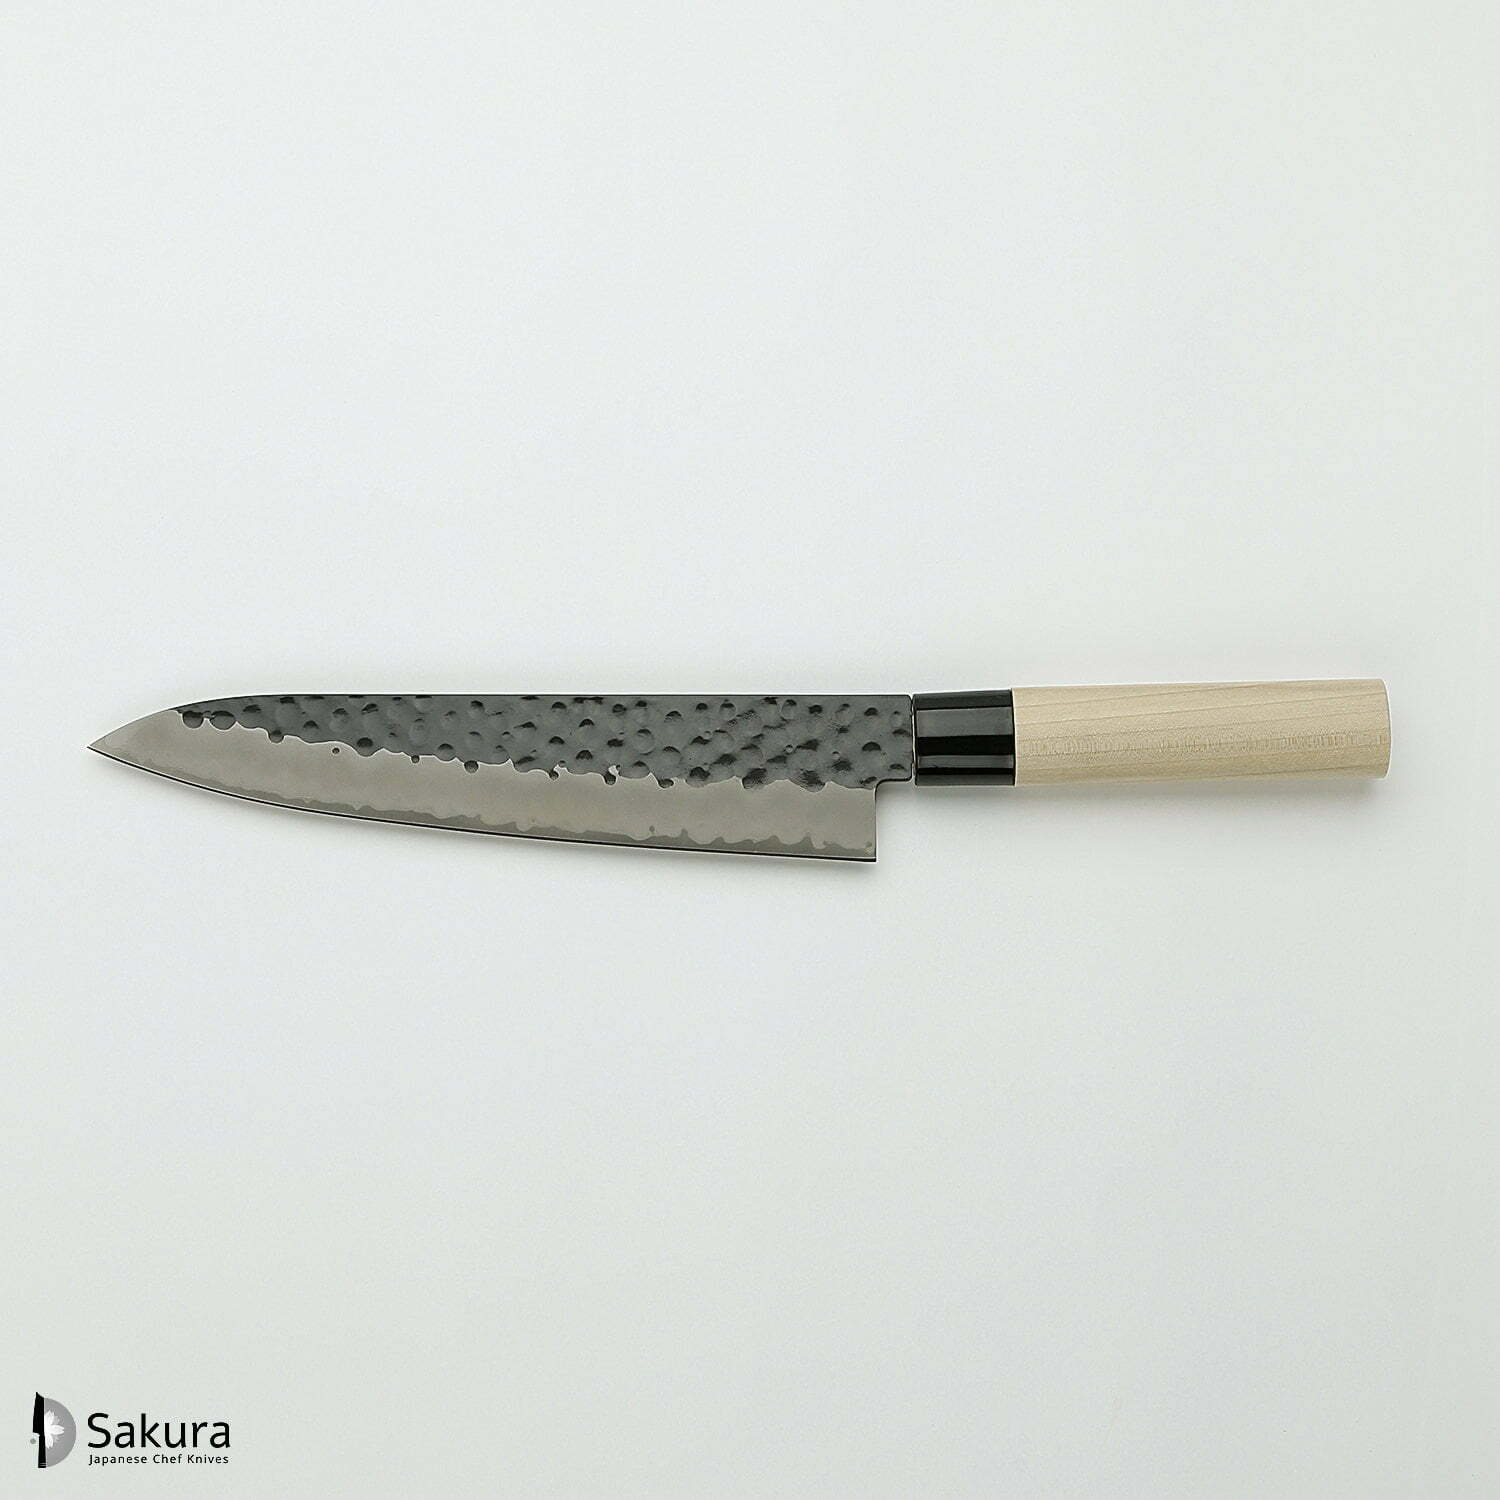 סכין שף רב-תכליתית גִּיוּטוֹ 240מ״מ מחוזקת 3 שכבות: פלדת פחמן יפנית VG-10 עטופה פלדת אל-חלד גימור קורואיצ׳י שחור עם ריקוע פטיש טוג׳ירו יפן